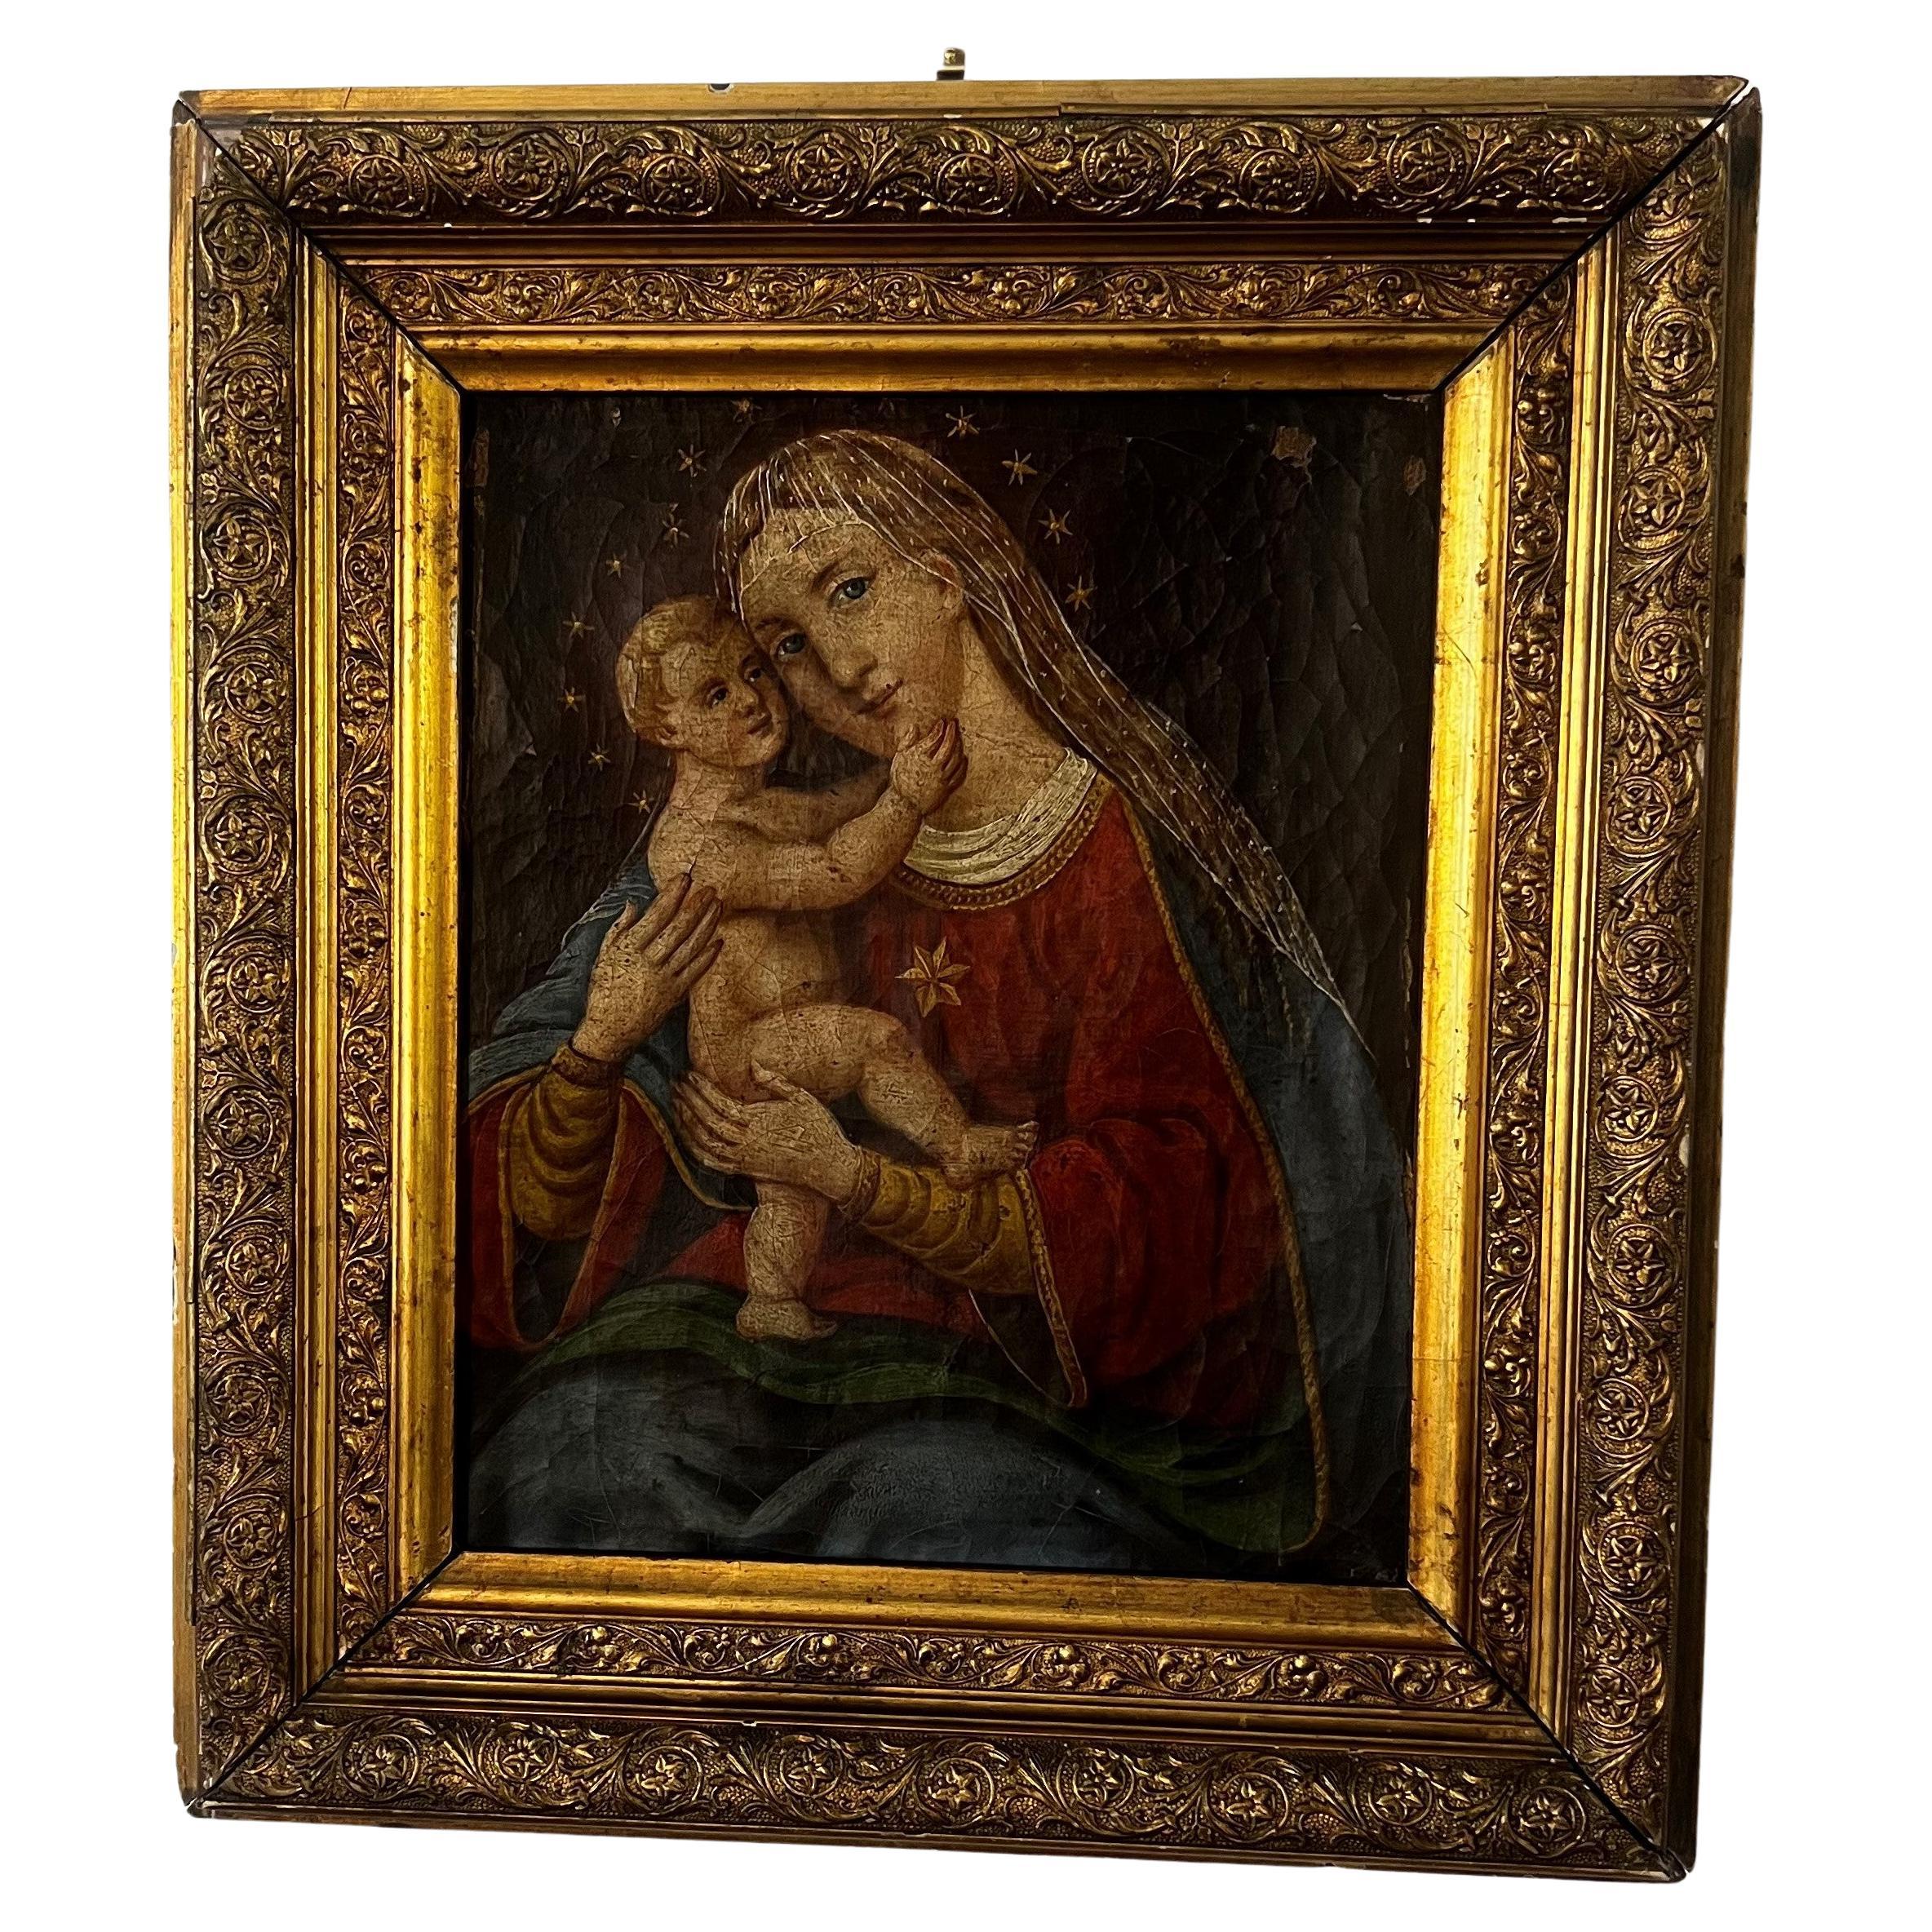 Huile sur toile vénitienne du XVIe siècle représentant la Madonna et l'Enfant Jésus